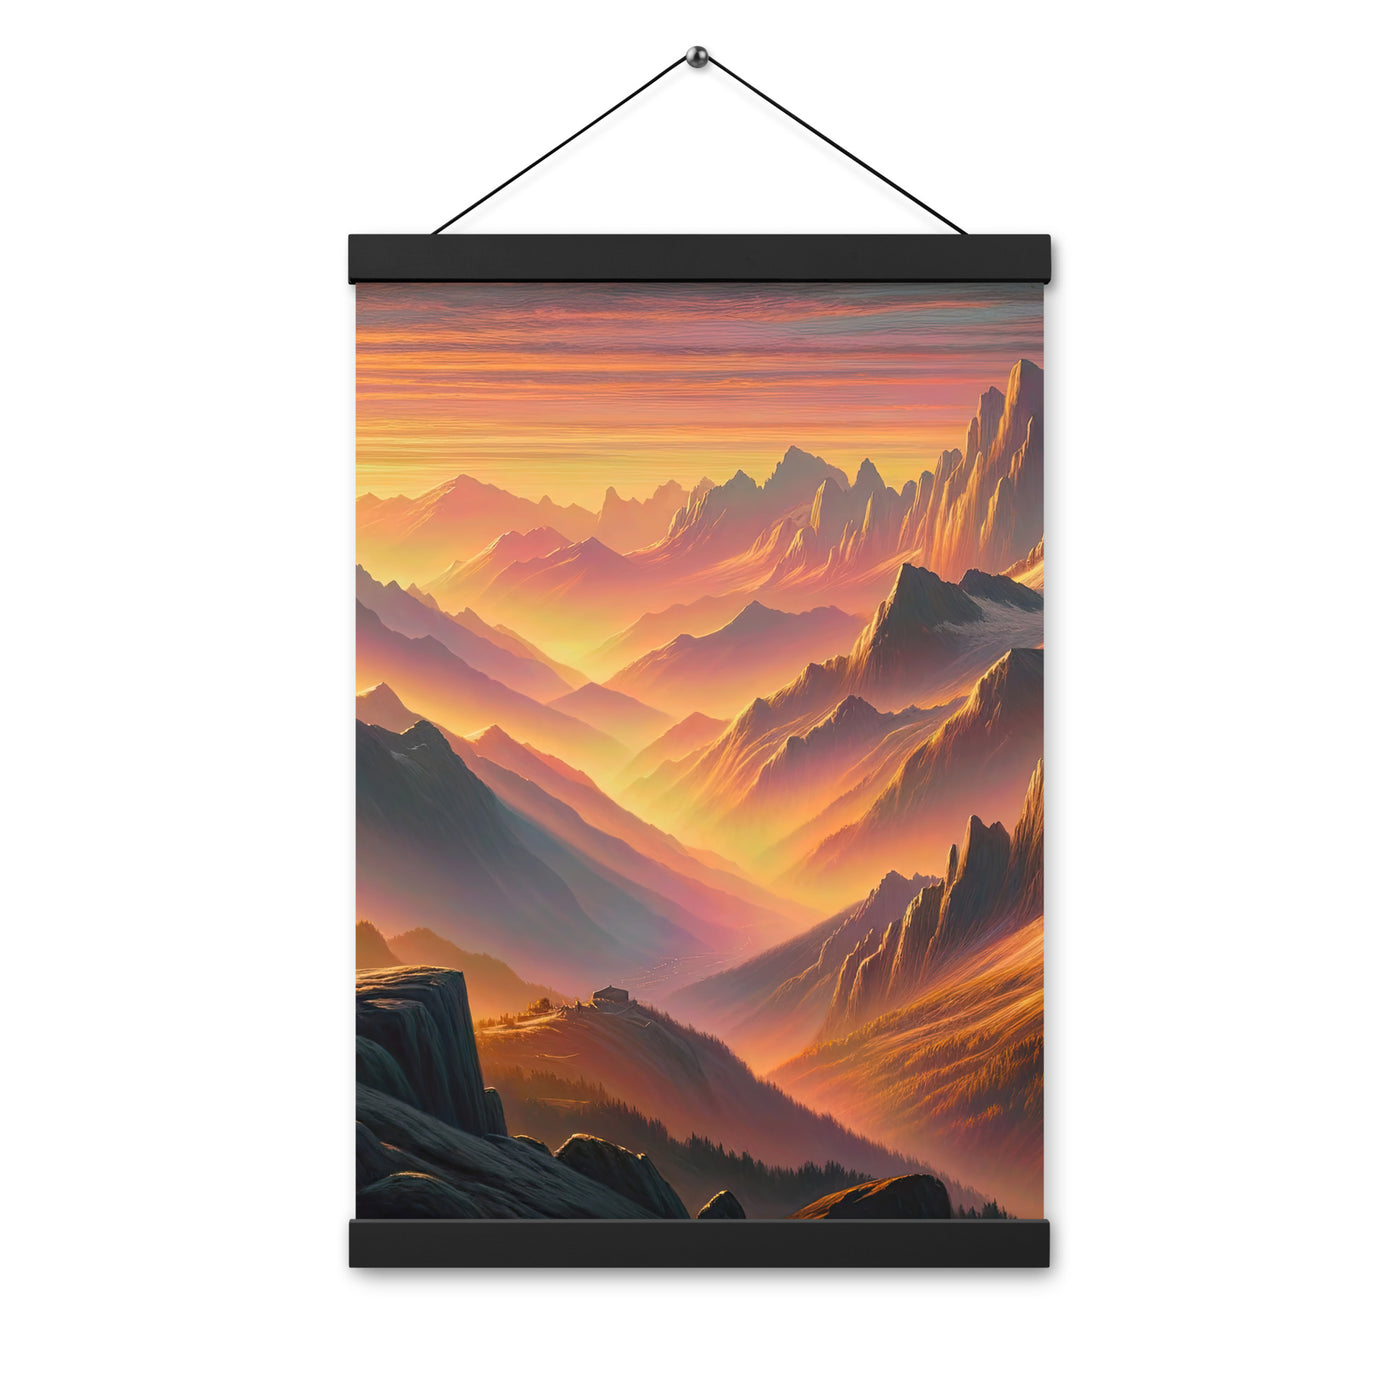 Ölgemälde der Alpen in der goldenen Stunde mit Wanderer, Orange-Rosa Bergpanorama - Premium Poster mit Aufhängung wandern xxx yyy zzz 30.5 x 45.7 cm